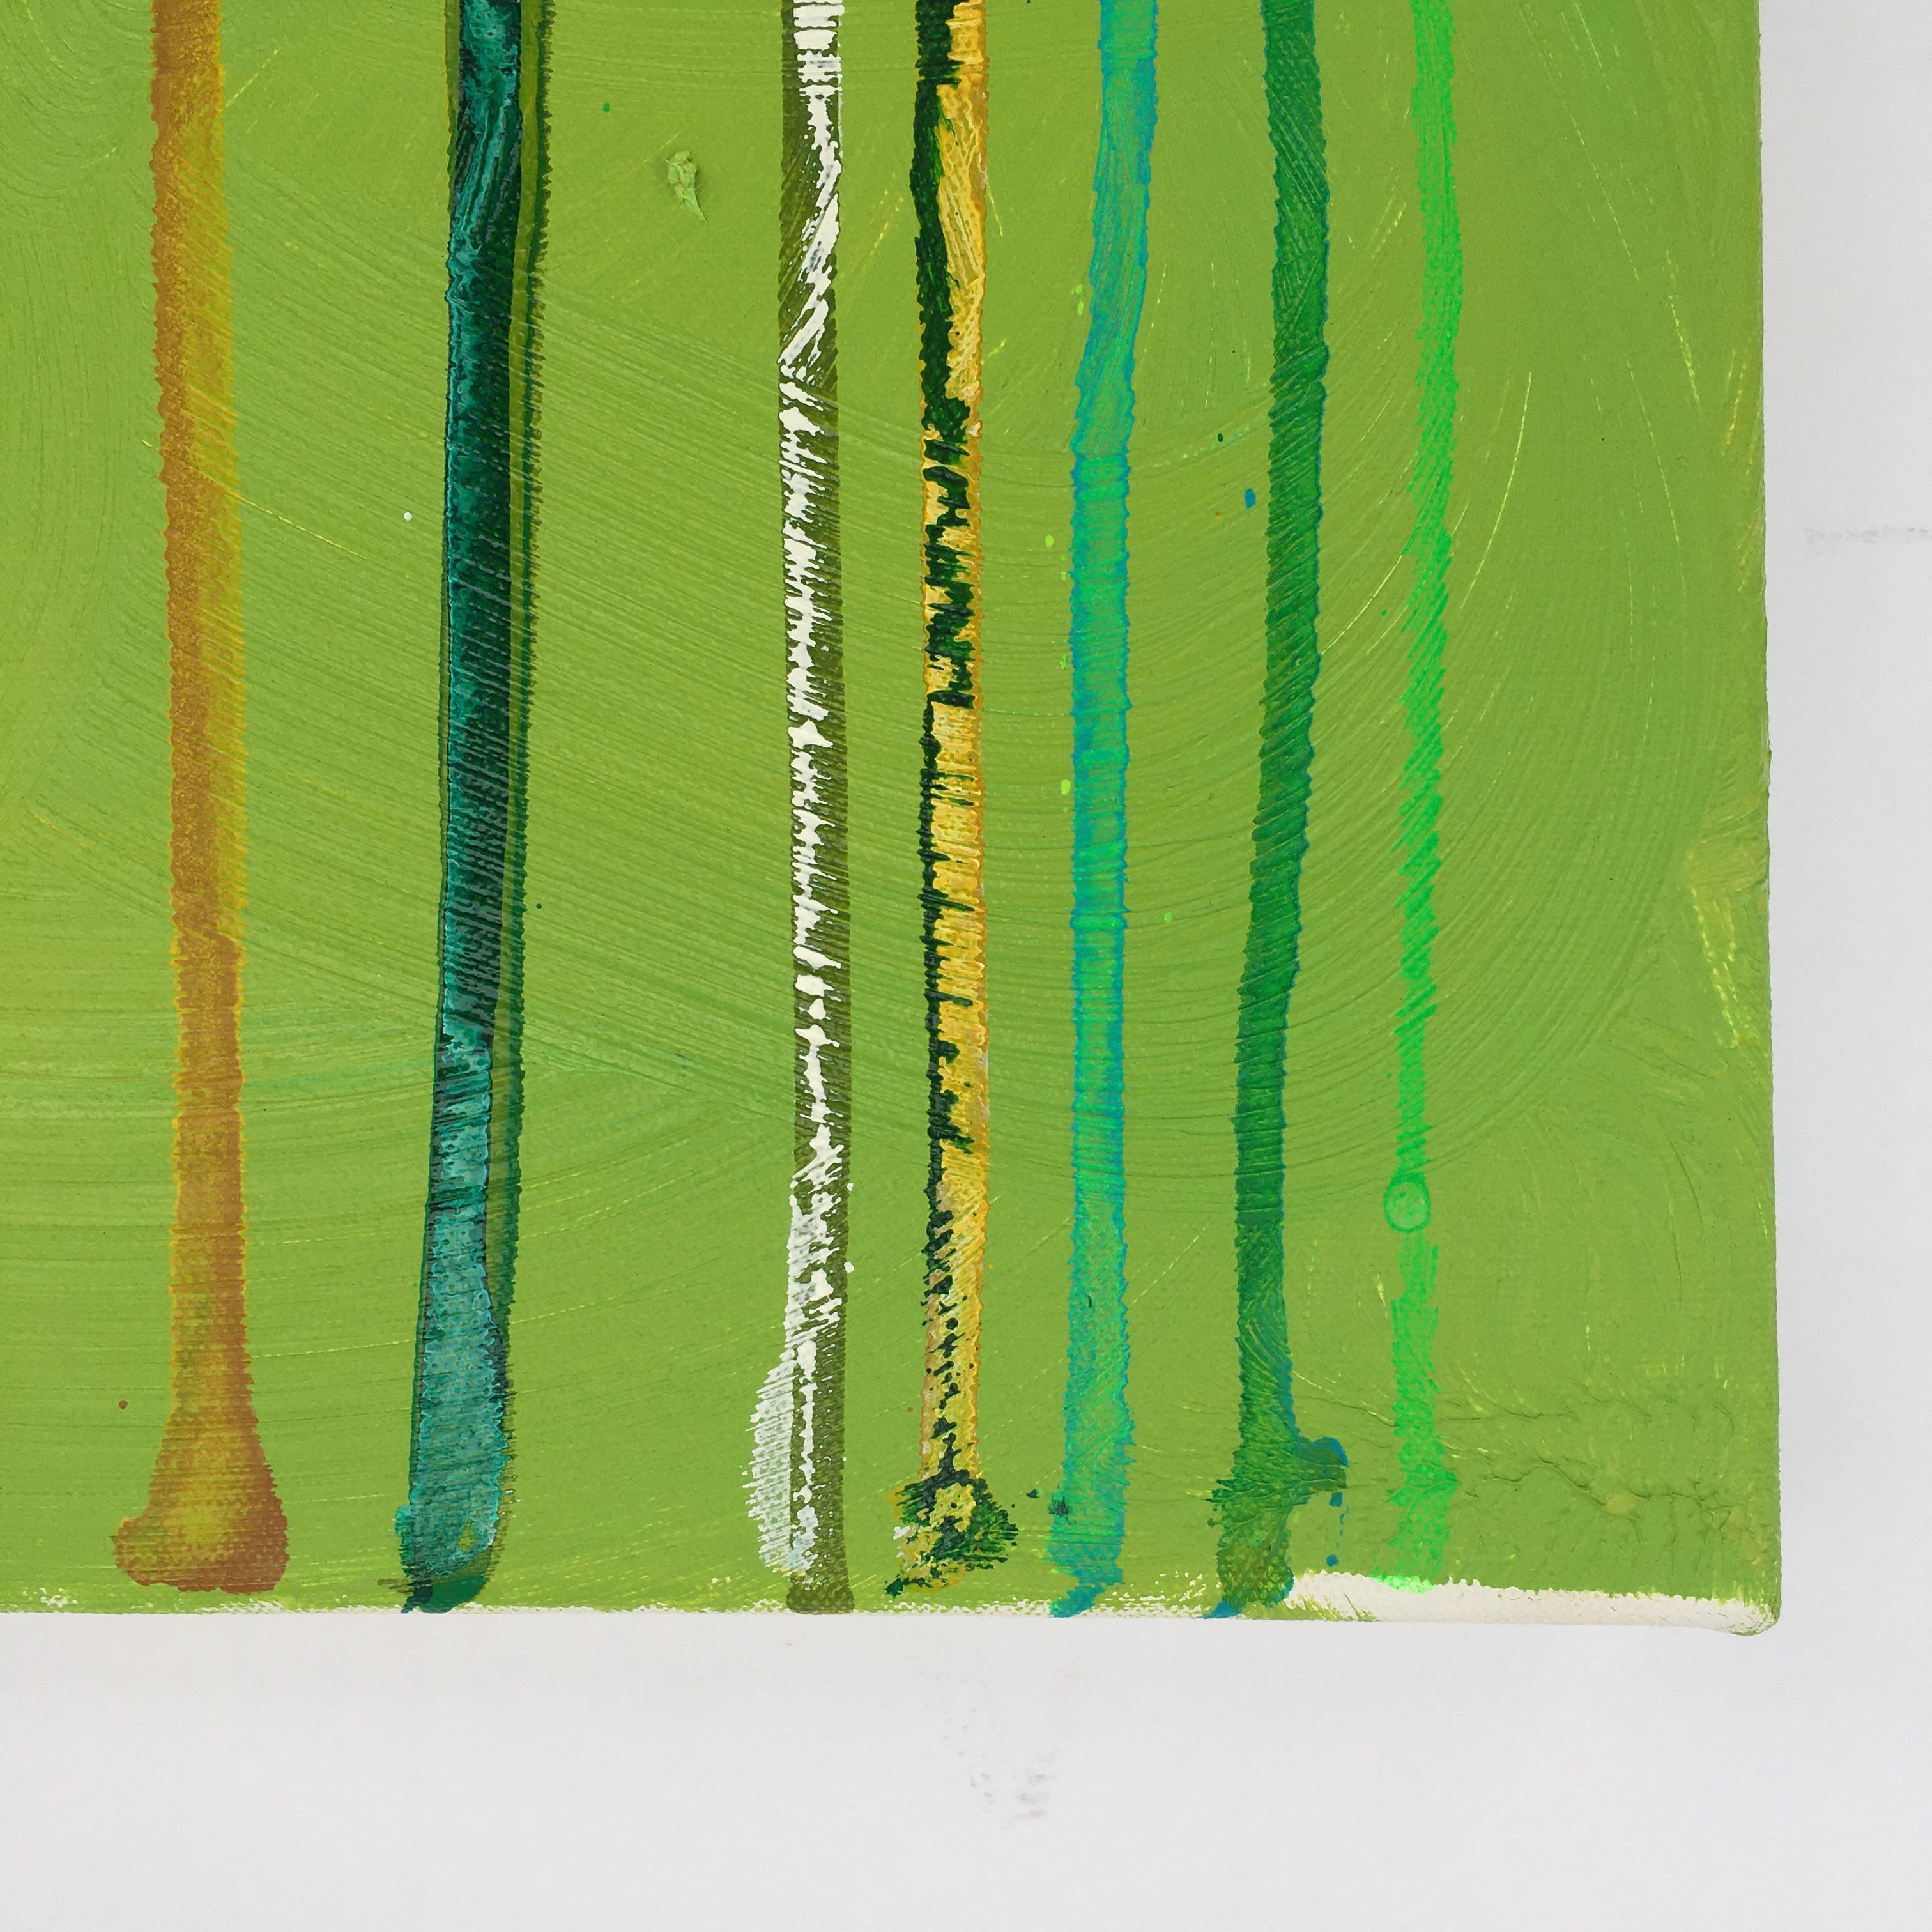 Forest Flood : paysage à l'huile expressionniste abstrait en vert avec lignes verticales - Vert Landscape Painting par Dennis Alter